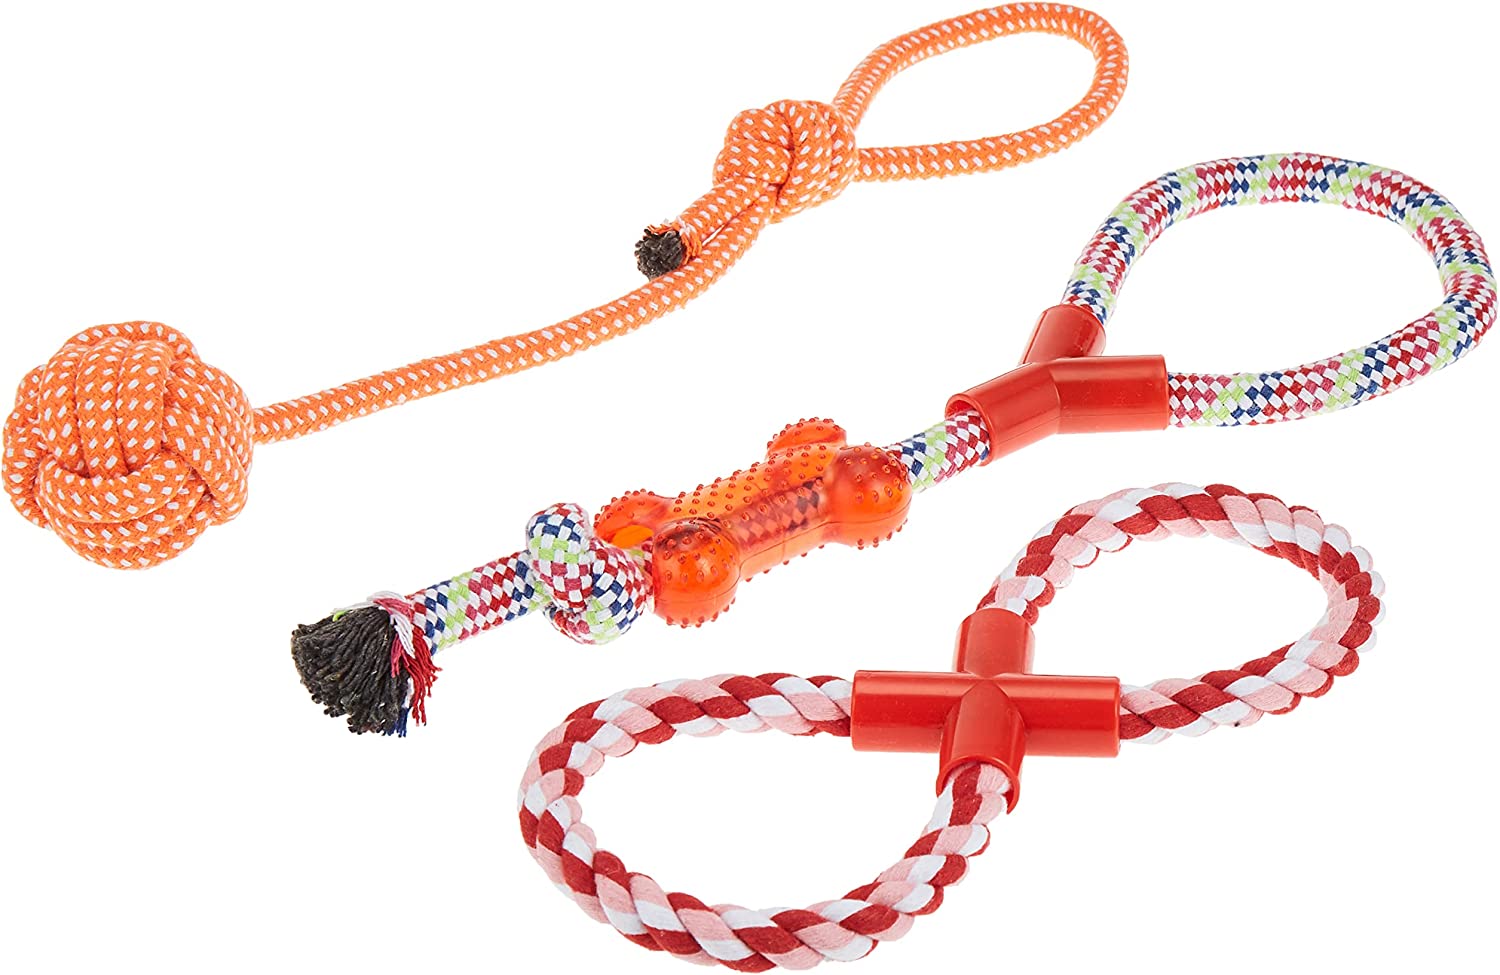 این اسباب بازی ها شامل طناب و اسباب بازی های مخمل خواب دار هستند که حیوان خانگی شما می تواند آنها را بجود و با آنها بازی کند